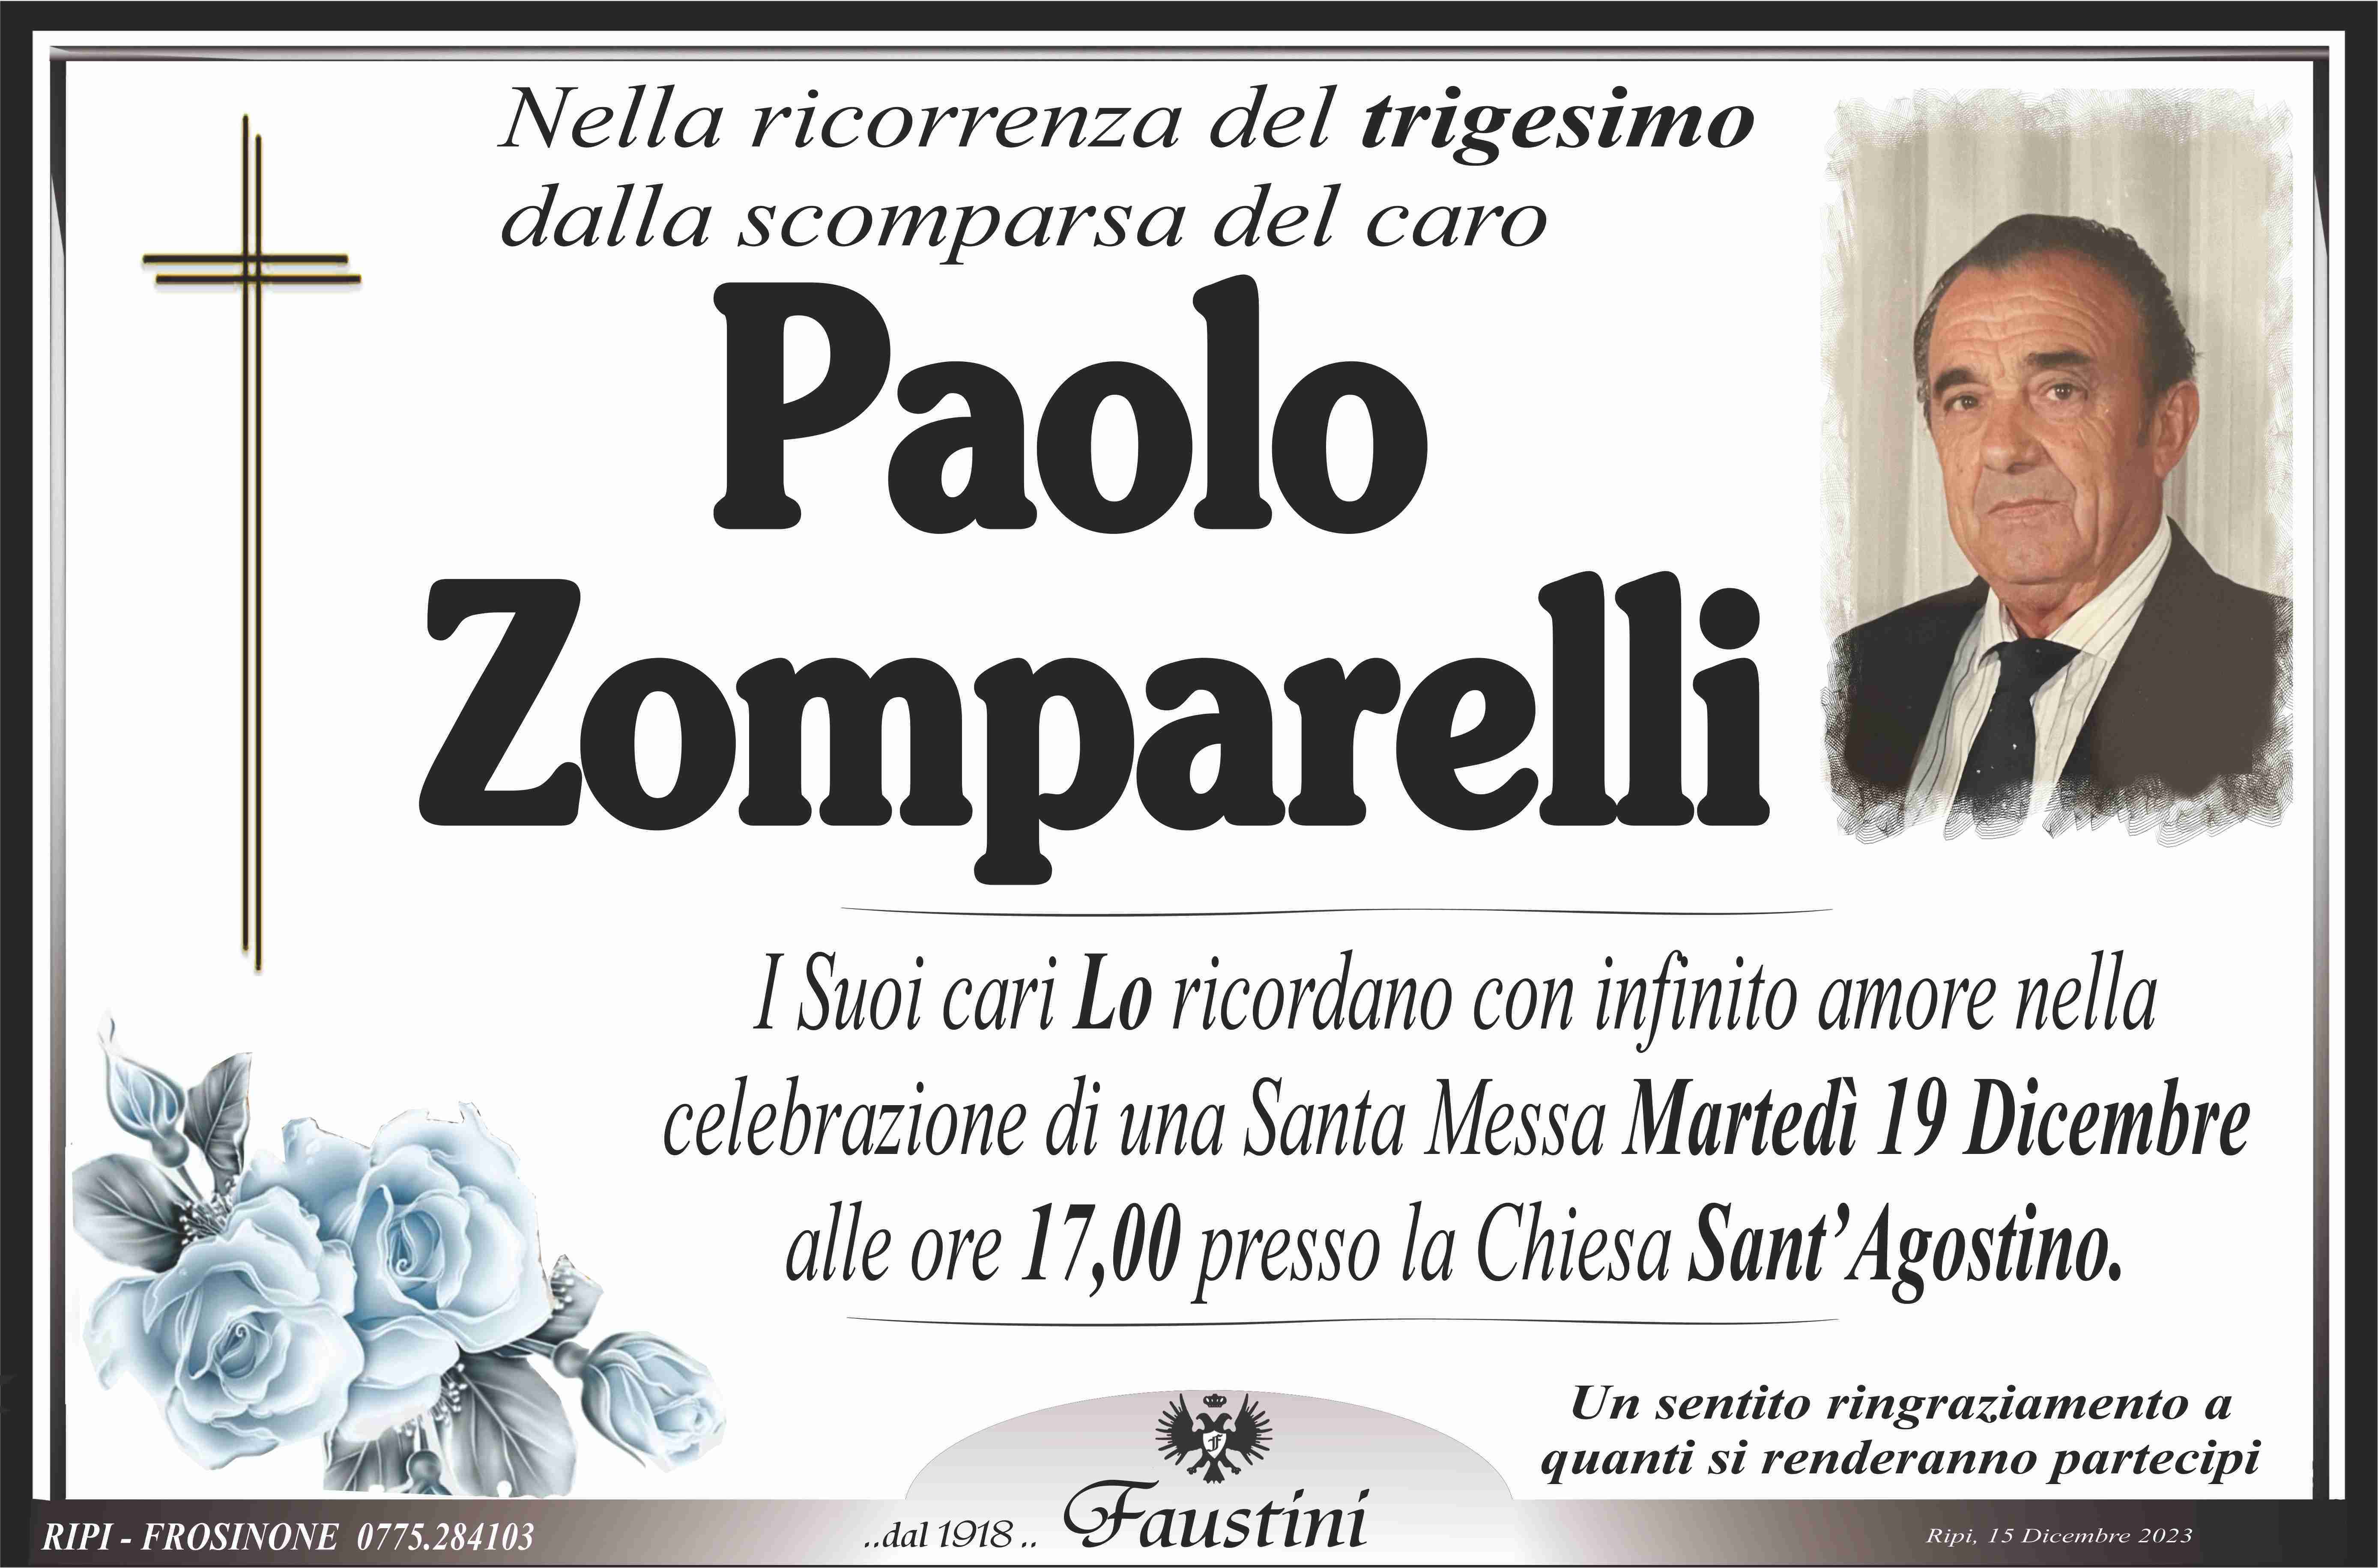 Paolo Zomparelli